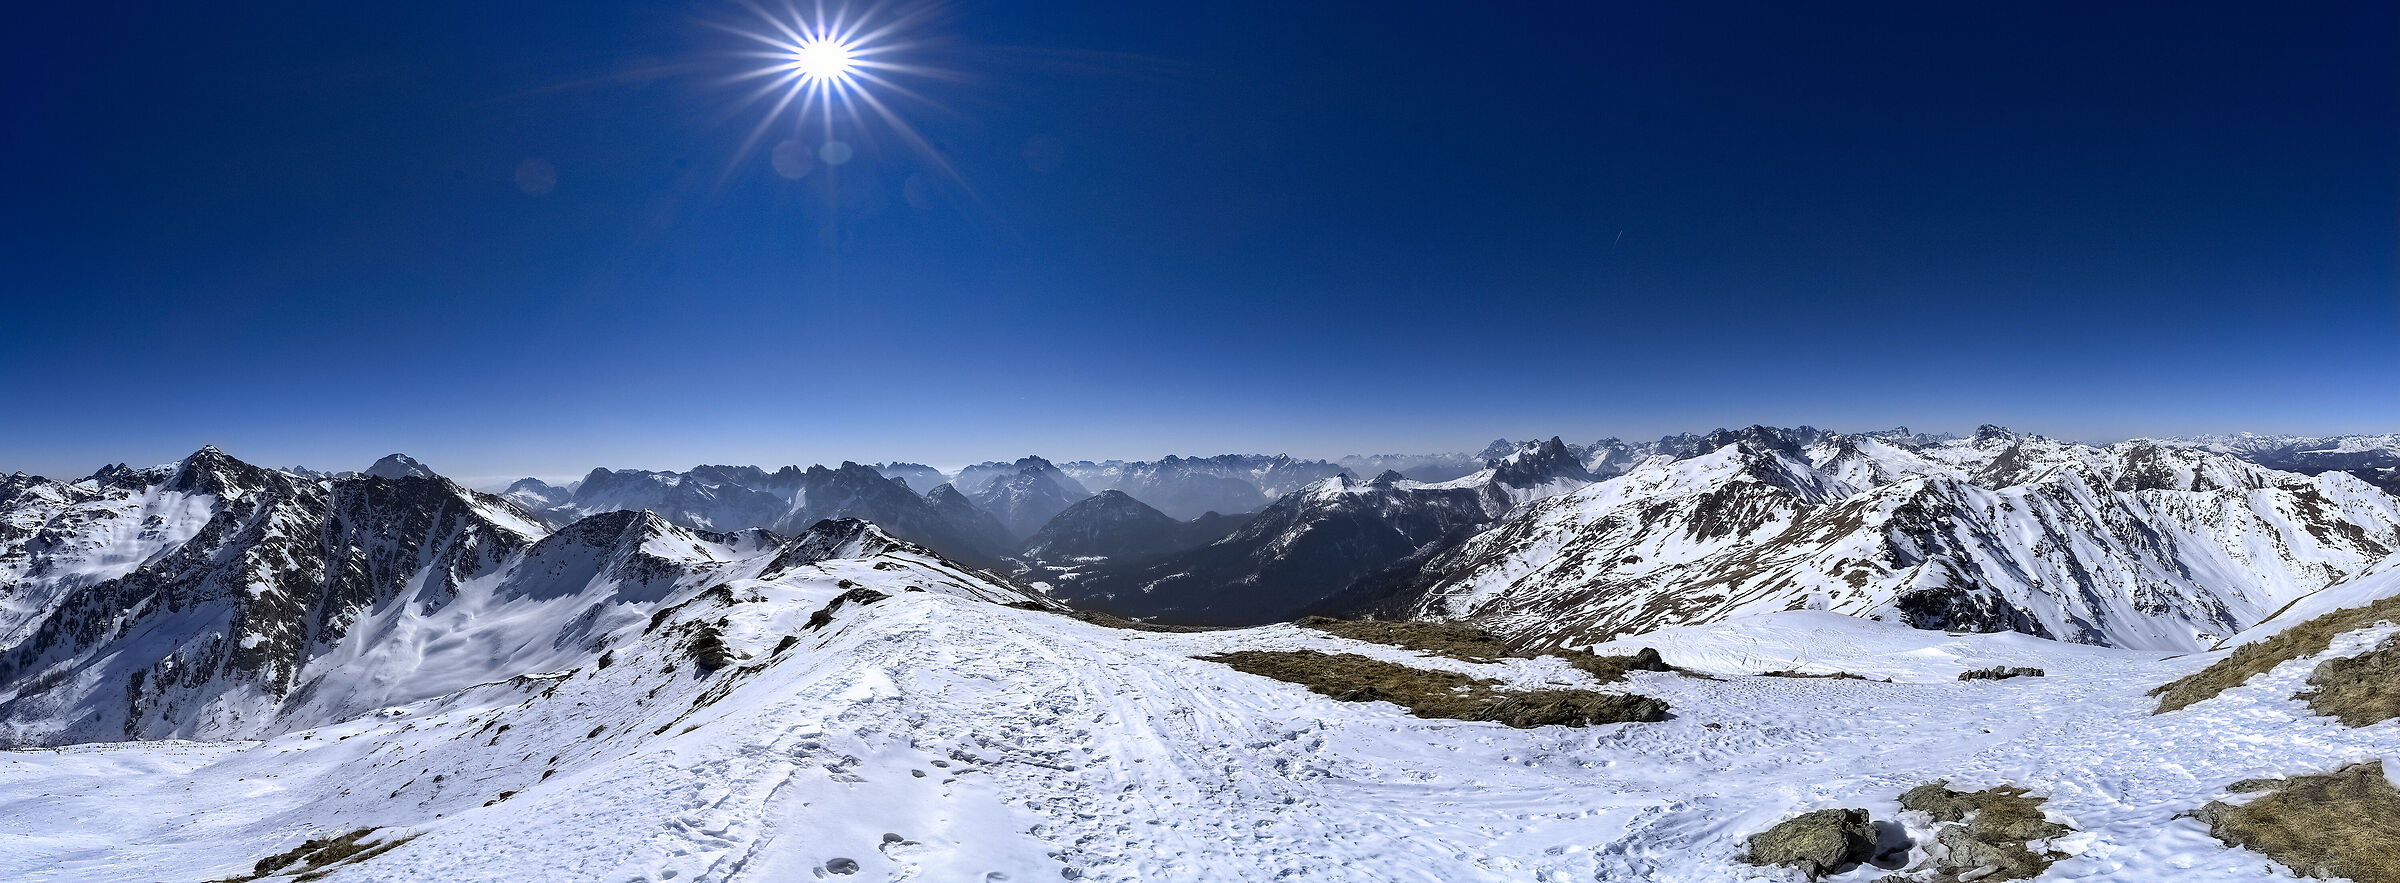 Pano alpi , border austria Italy...